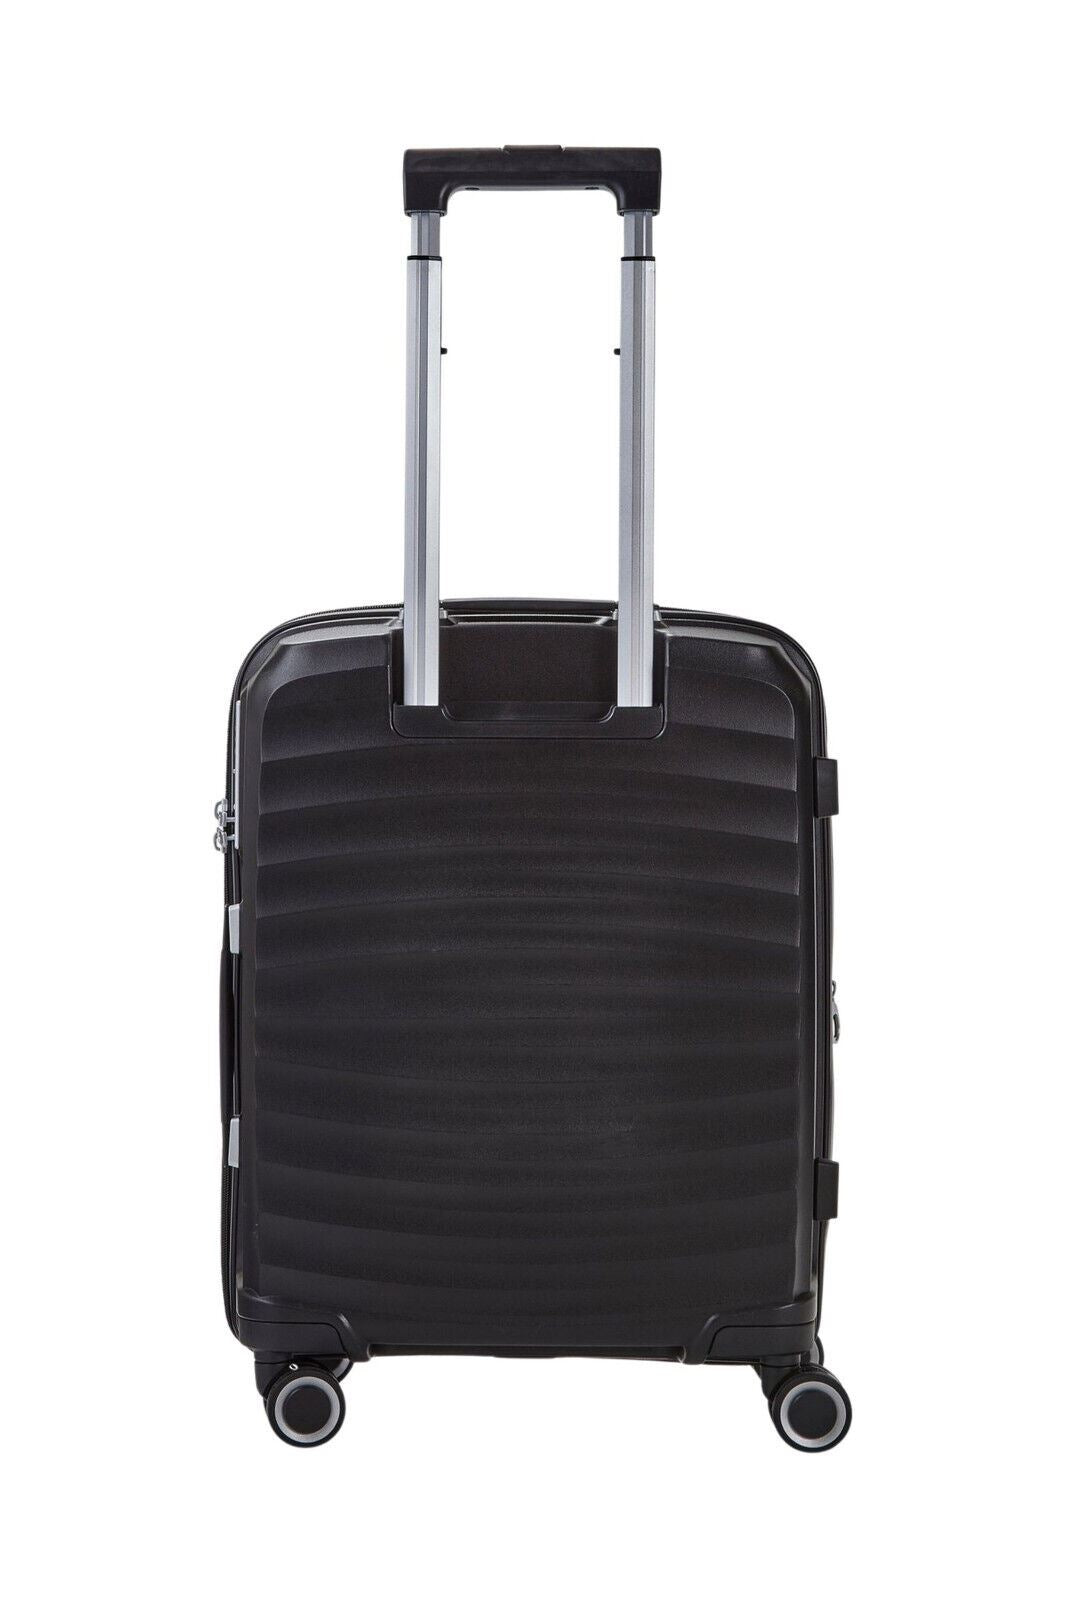 Sunwave Hard Shell Luggage Suitcase Set